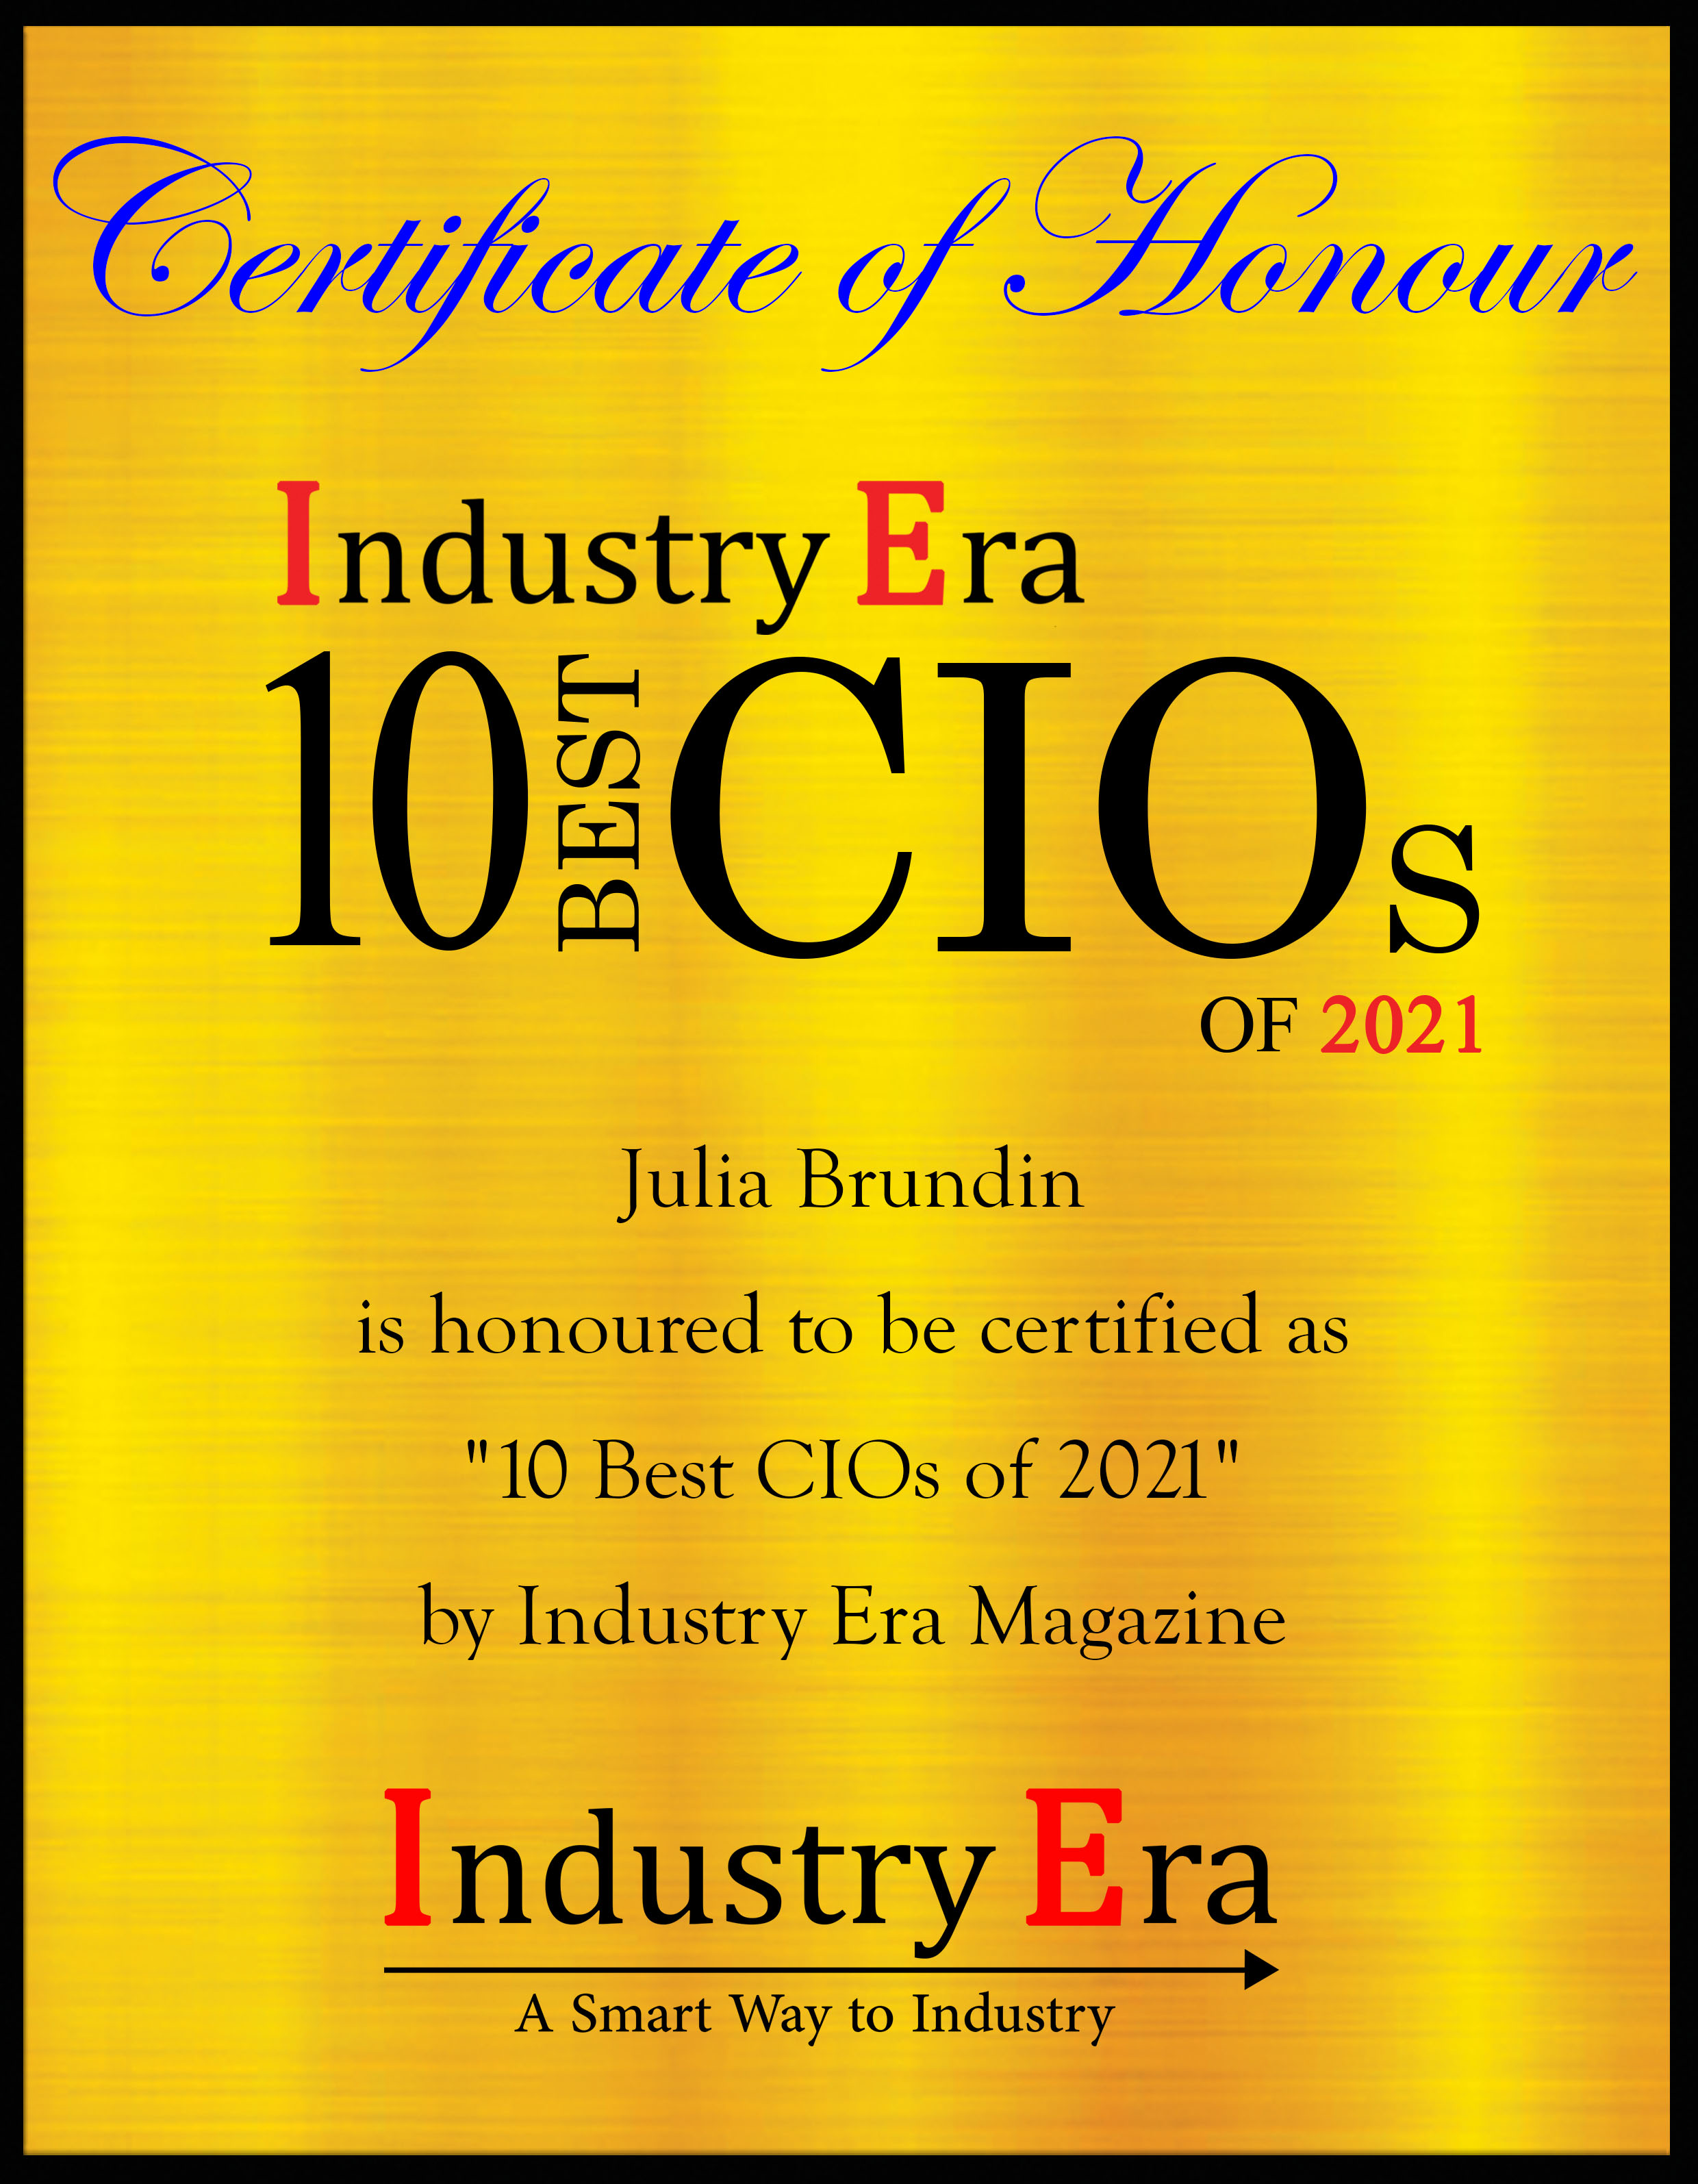 Julia Brundin CIO of Pierce AB, Best CIOs of 2021